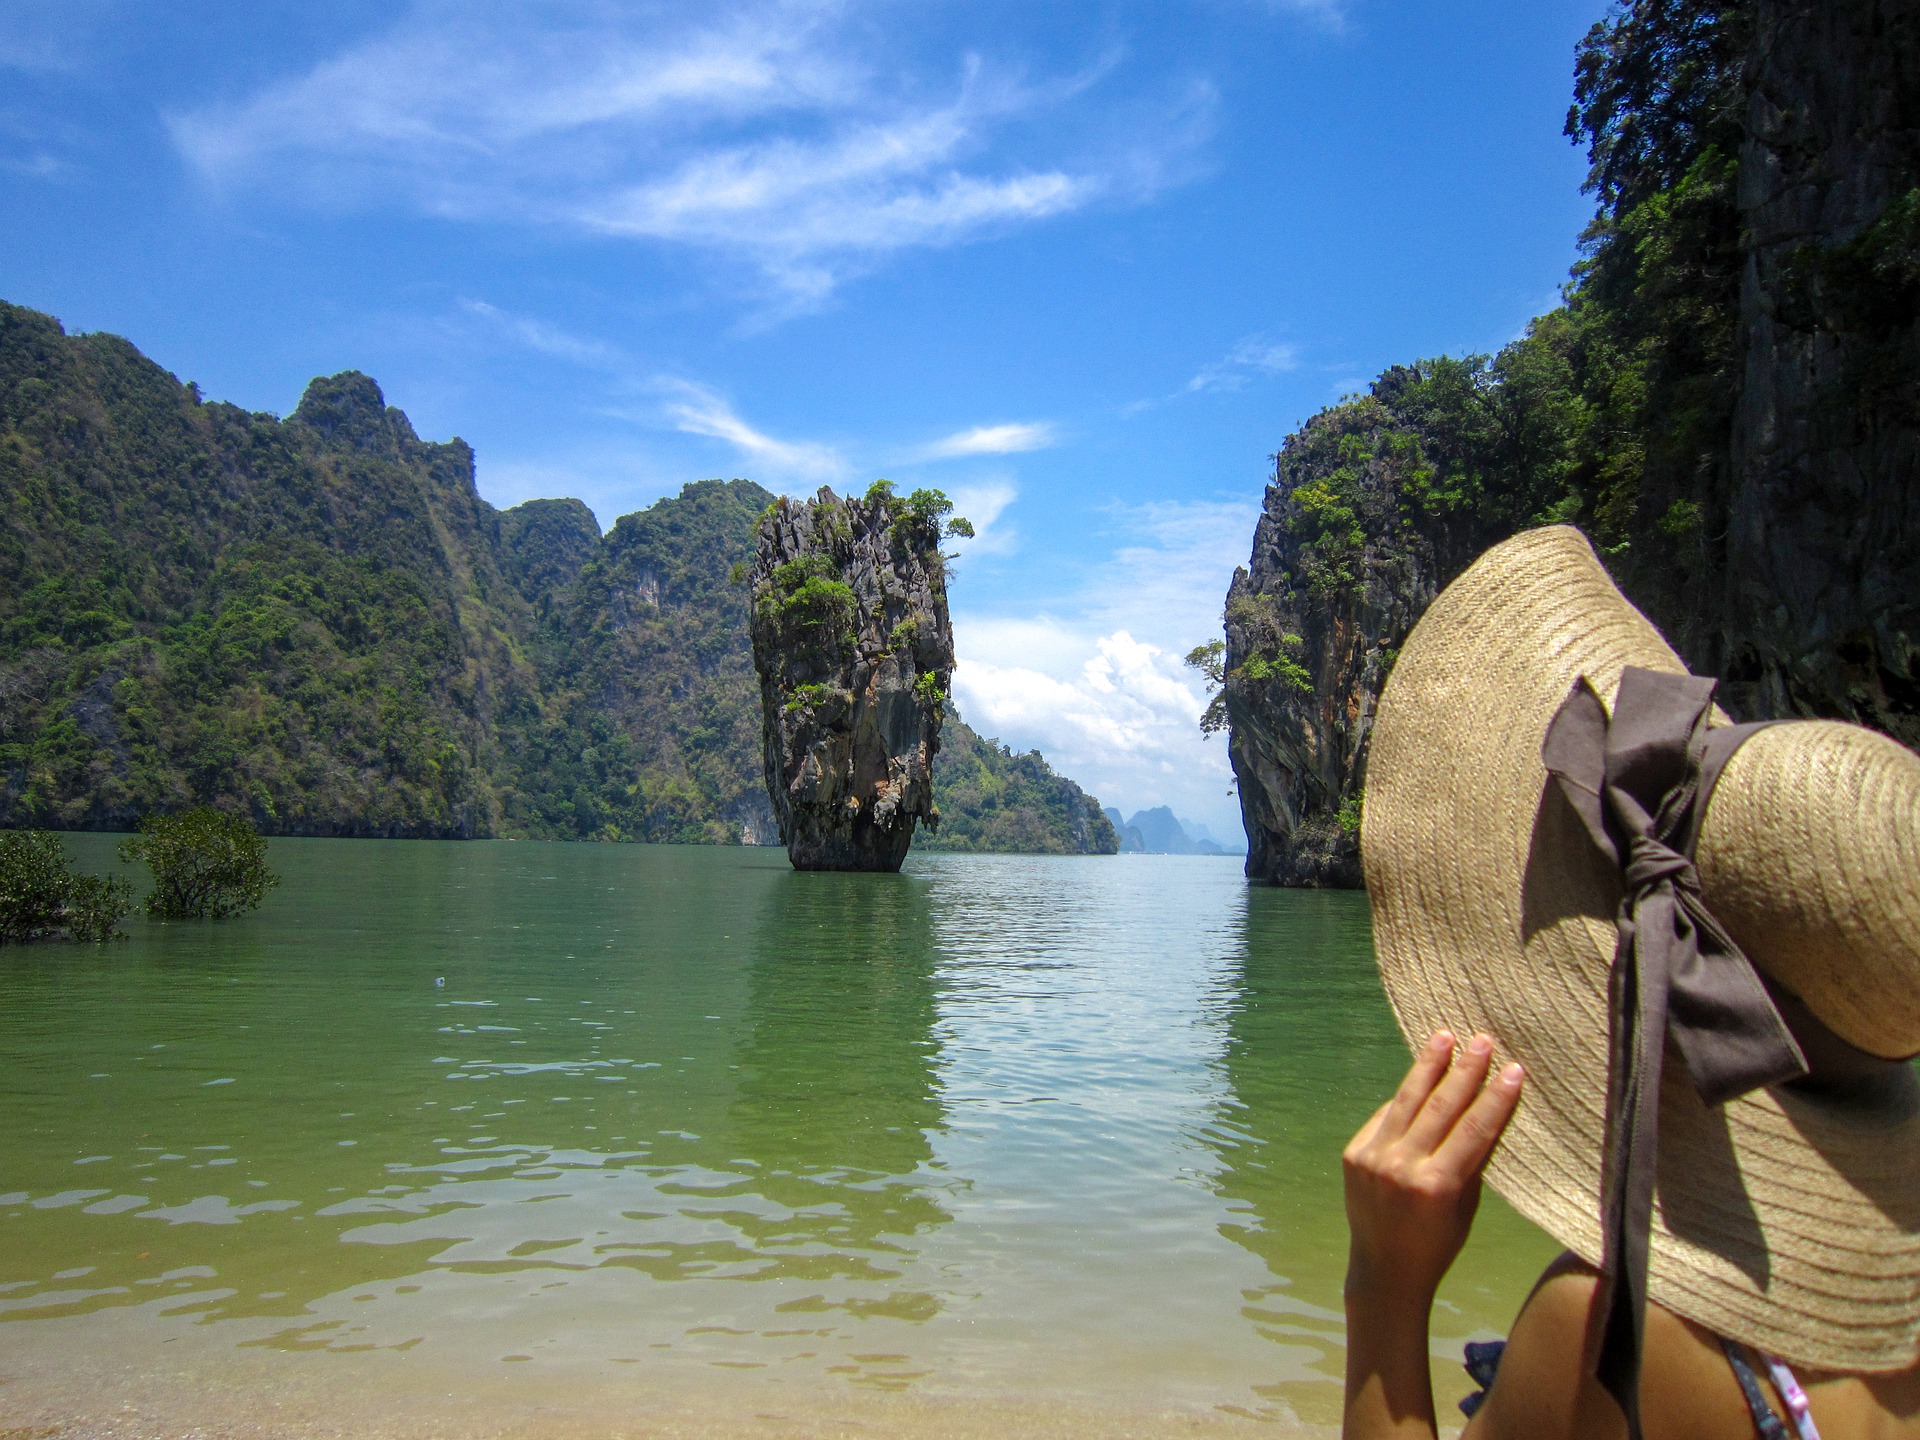 Locuri de vizitat și plaje frumoase în Thailanda: Pucket şi Krabi